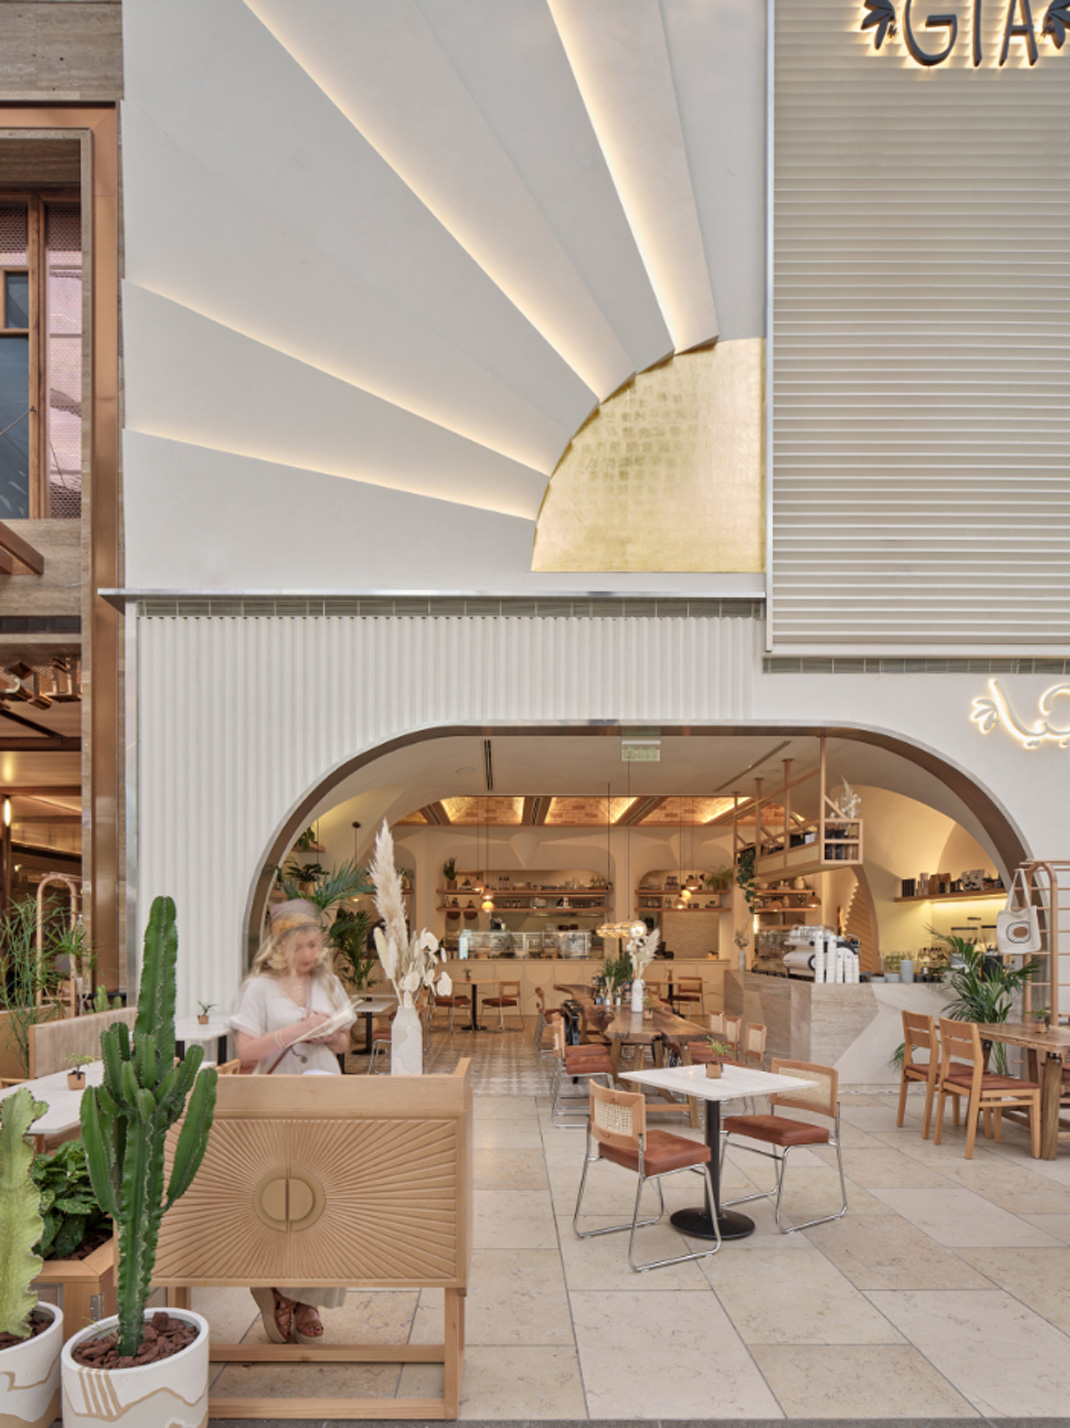 轻食餐厅GIA 特威特 轻食 街铺 异形 弧形 logo设计 vi设计 空间设计